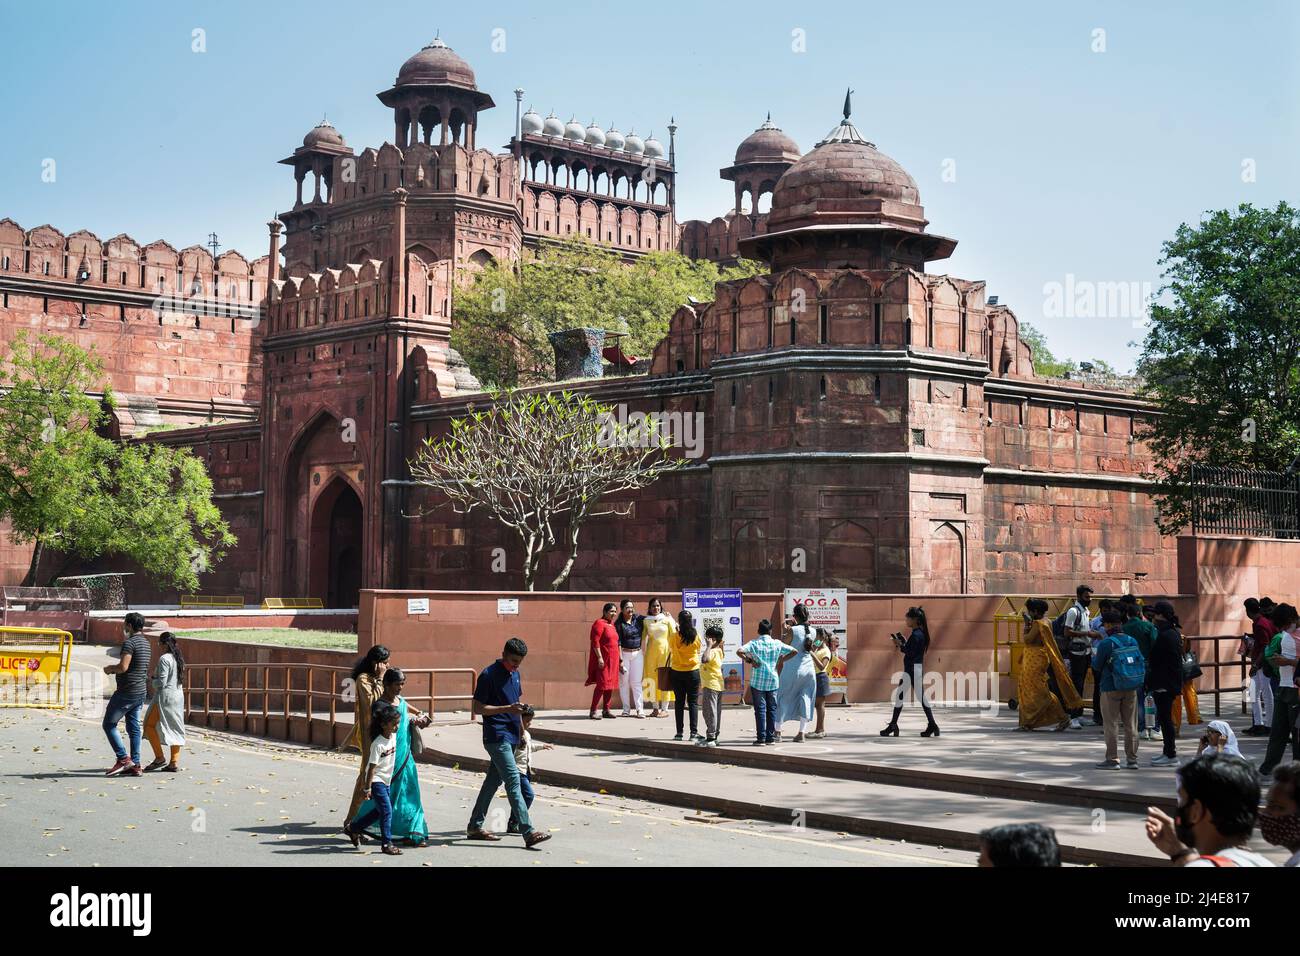 Mauern des Roten Forts. Die beeindruckende Mauer wurde aus rotem Sandstein erbaut. Delhi, Indien, Asien Stockfoto